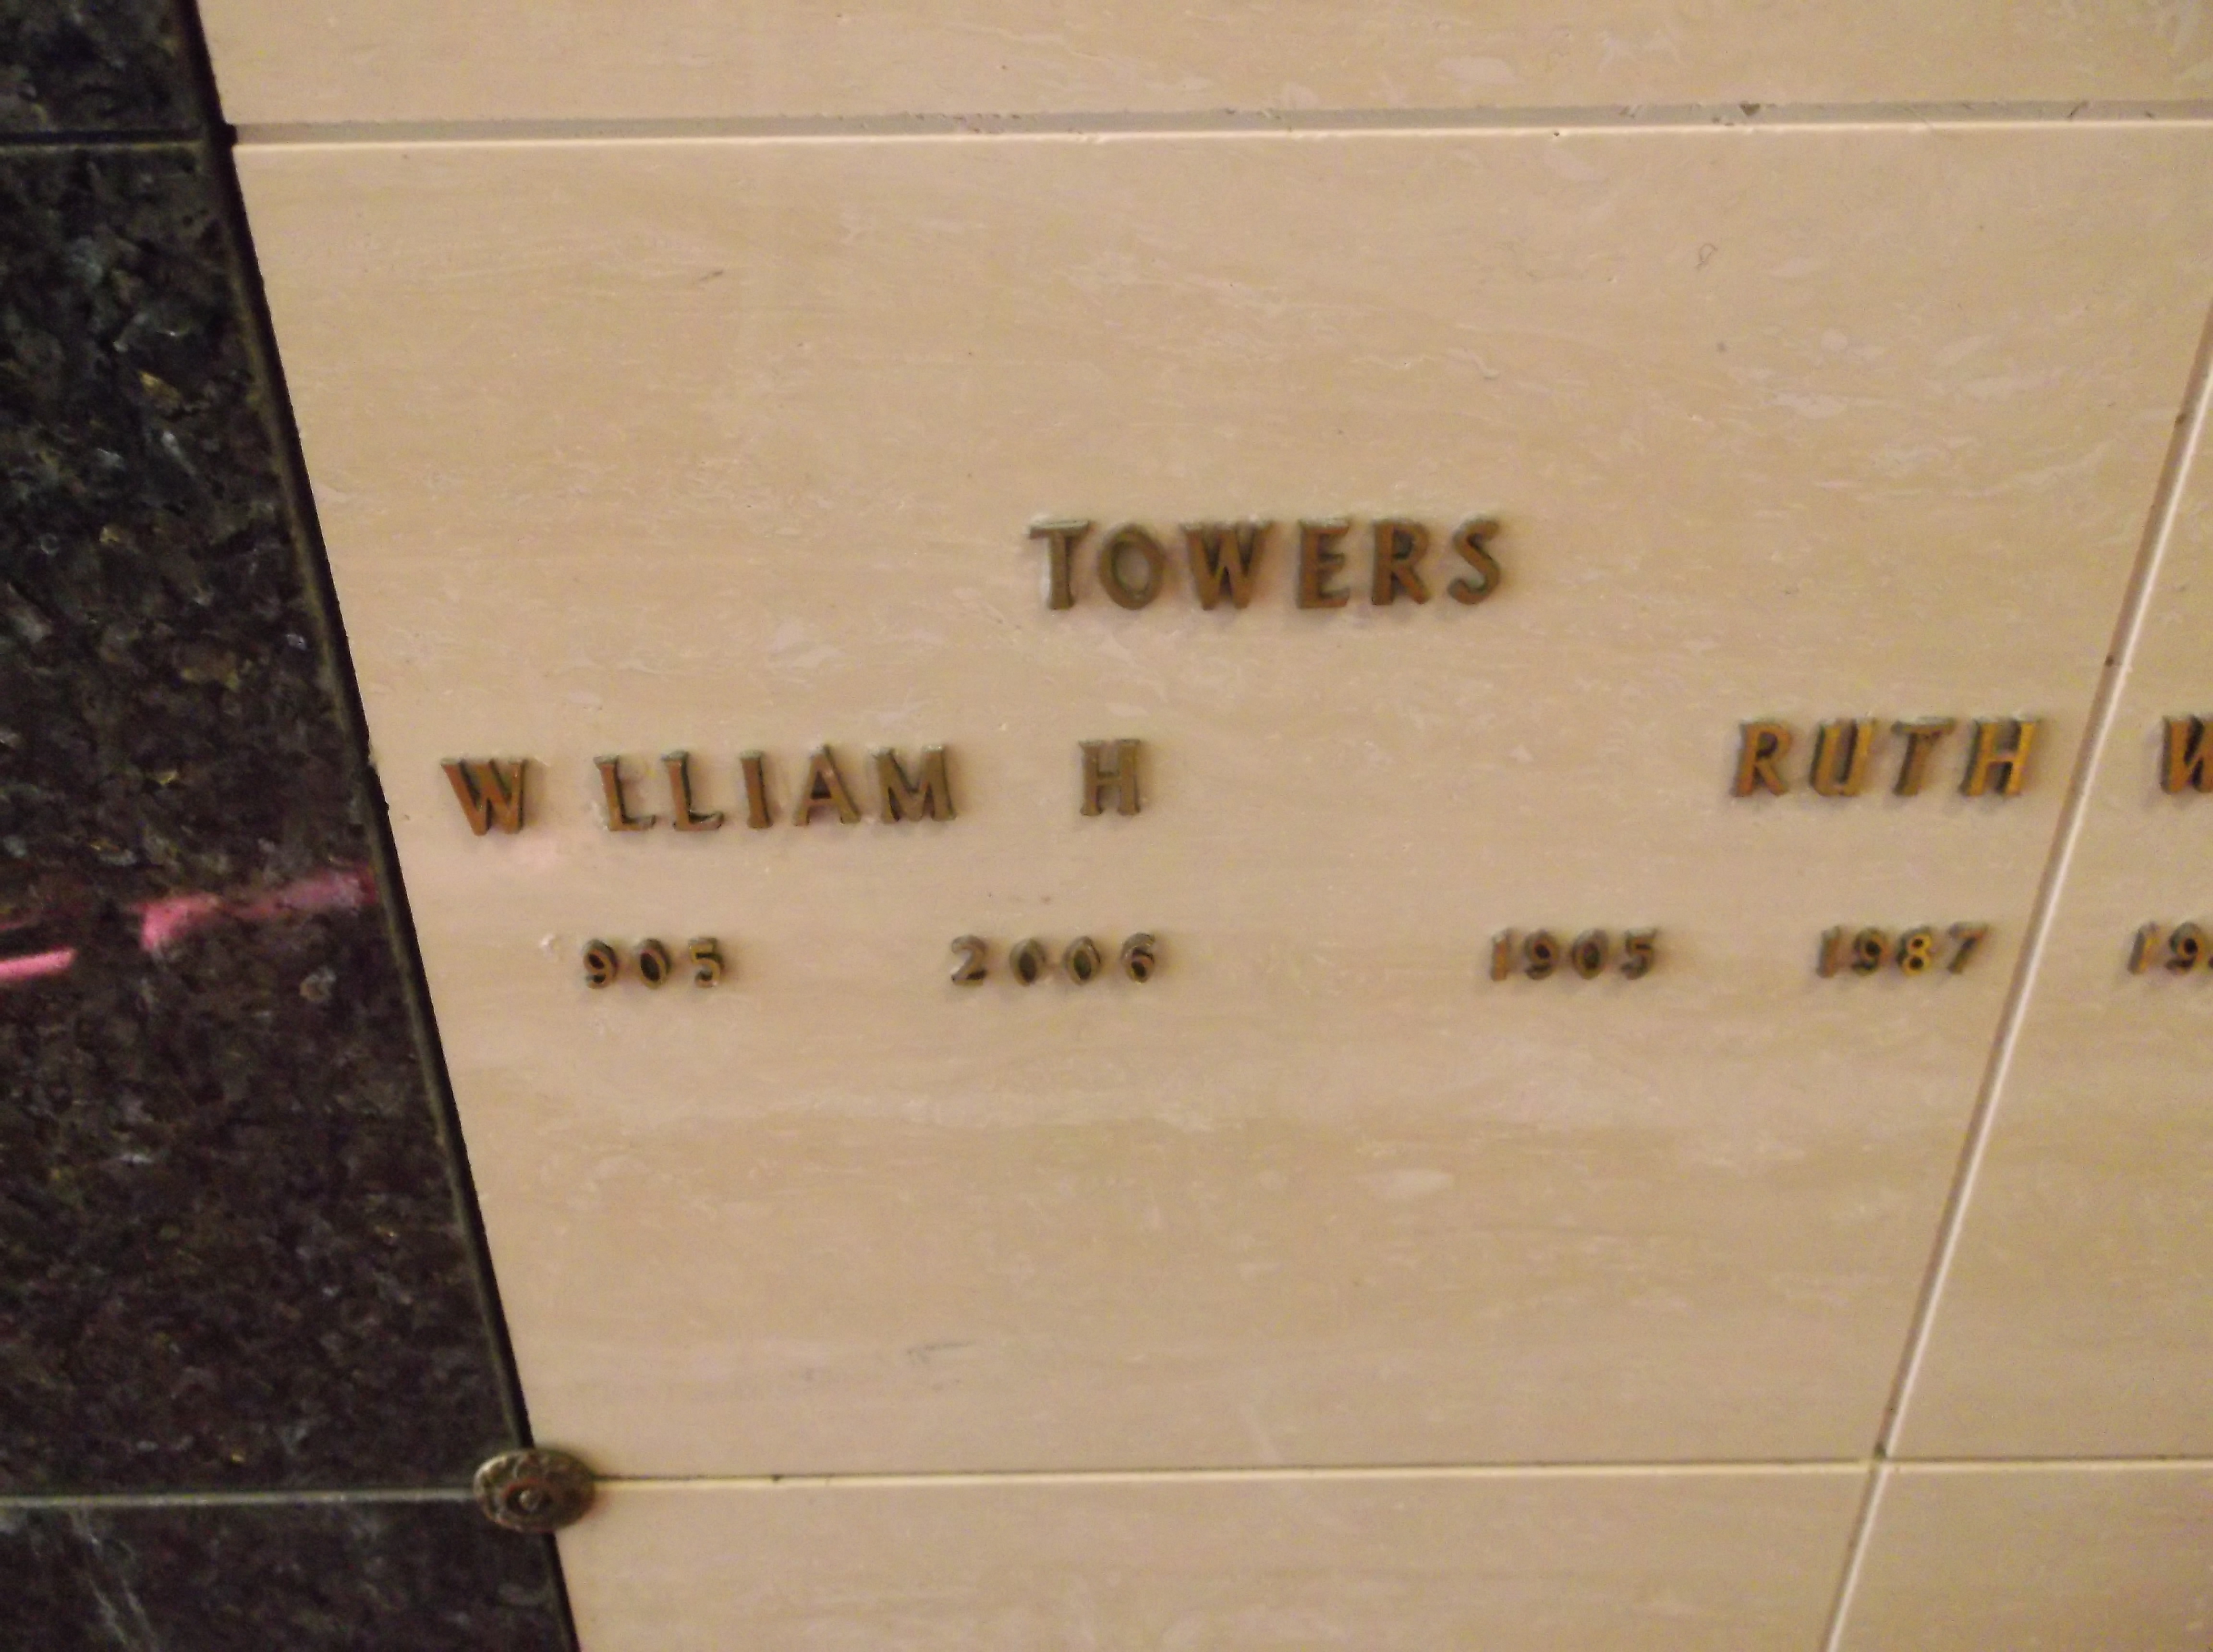 William H Towers